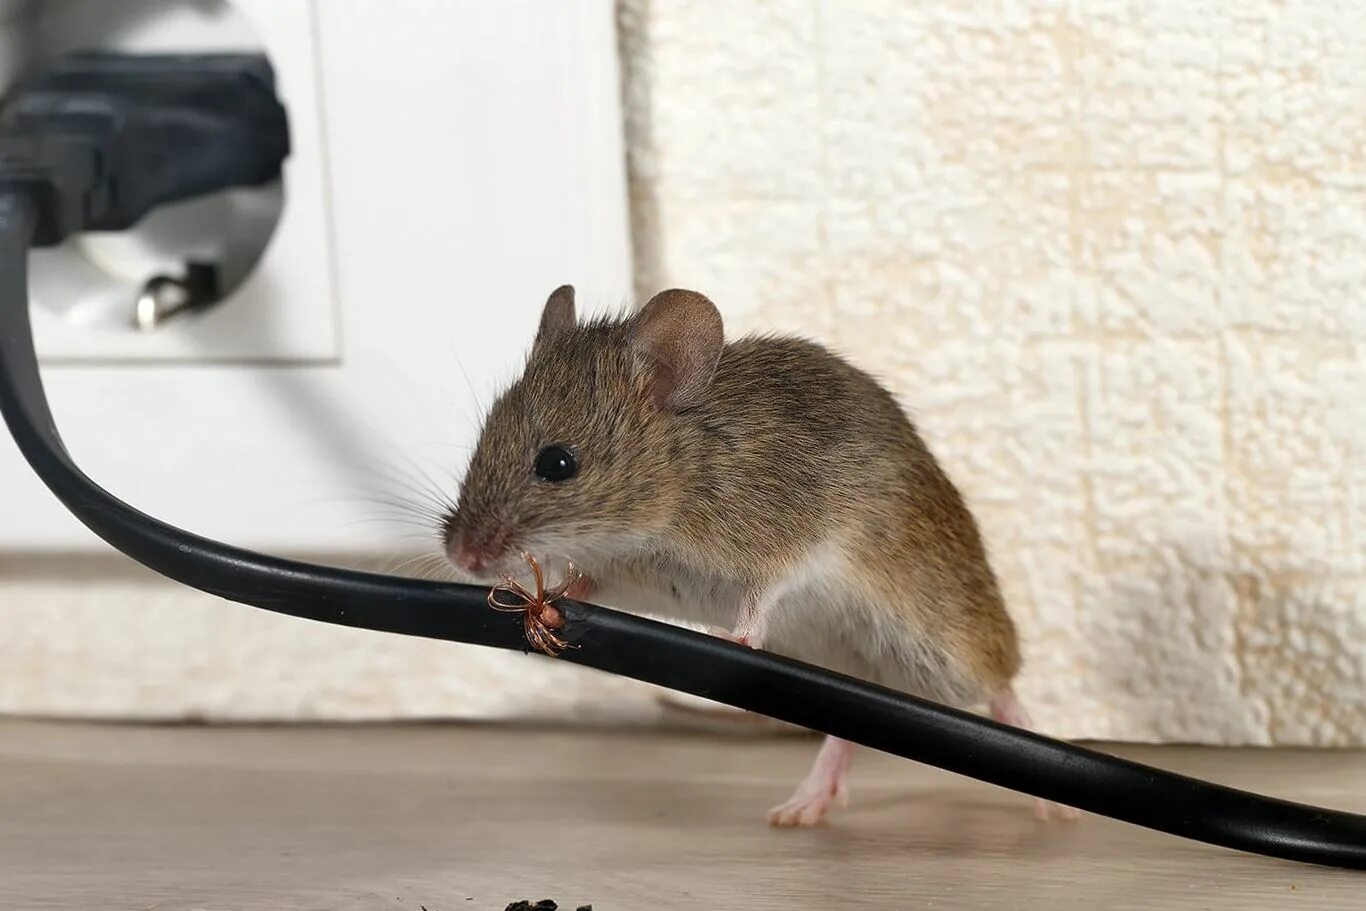 Мышь коре. Мыши в доме. Дом мышки. Мышь квартирная. Домашняя мышь квартирная.